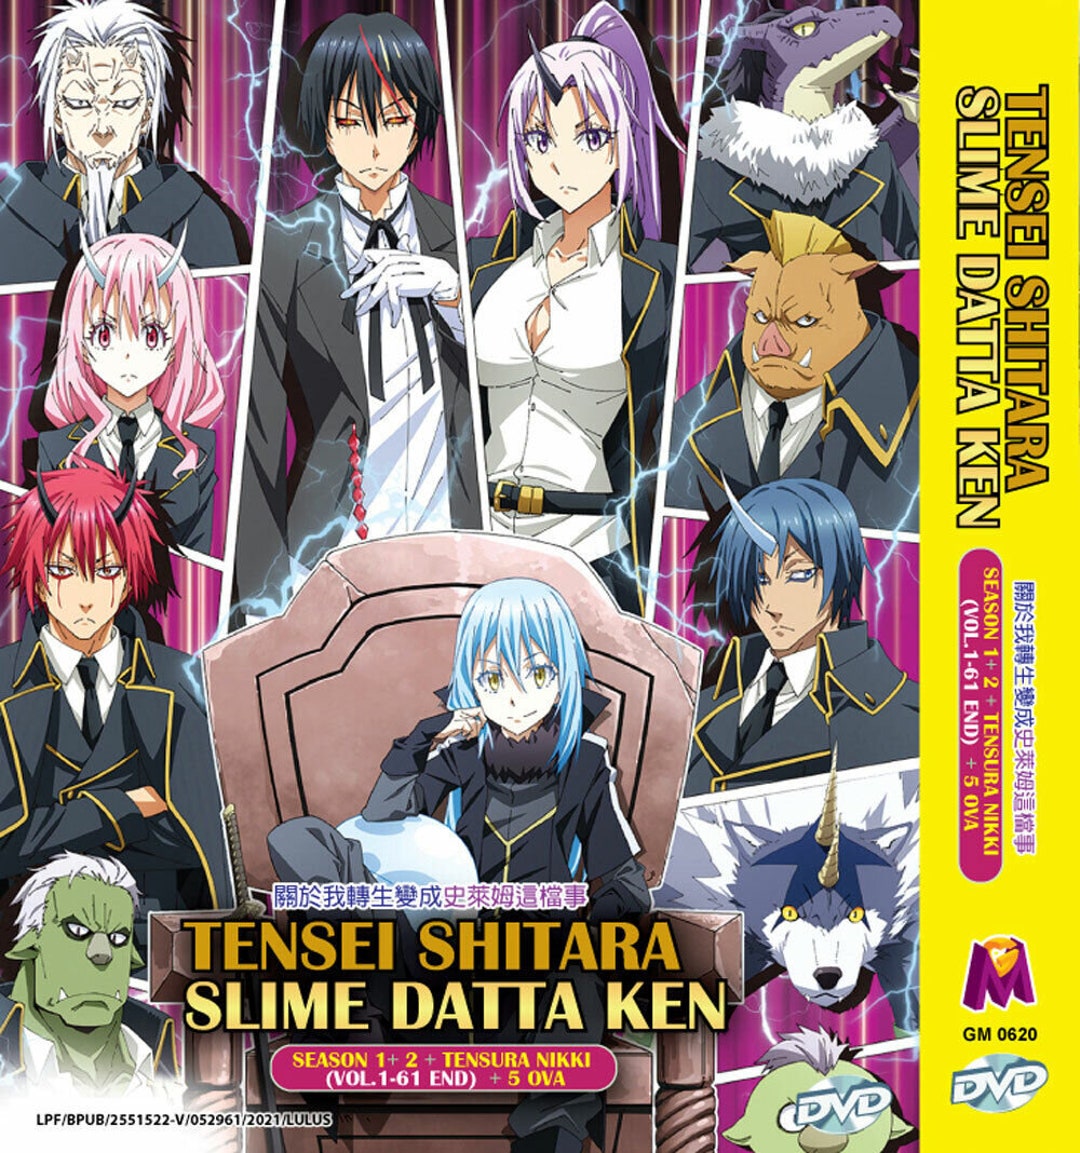 Tensei shitara Slime Datta Ken Movie: Guren no Kizuna-hen - Animes BR